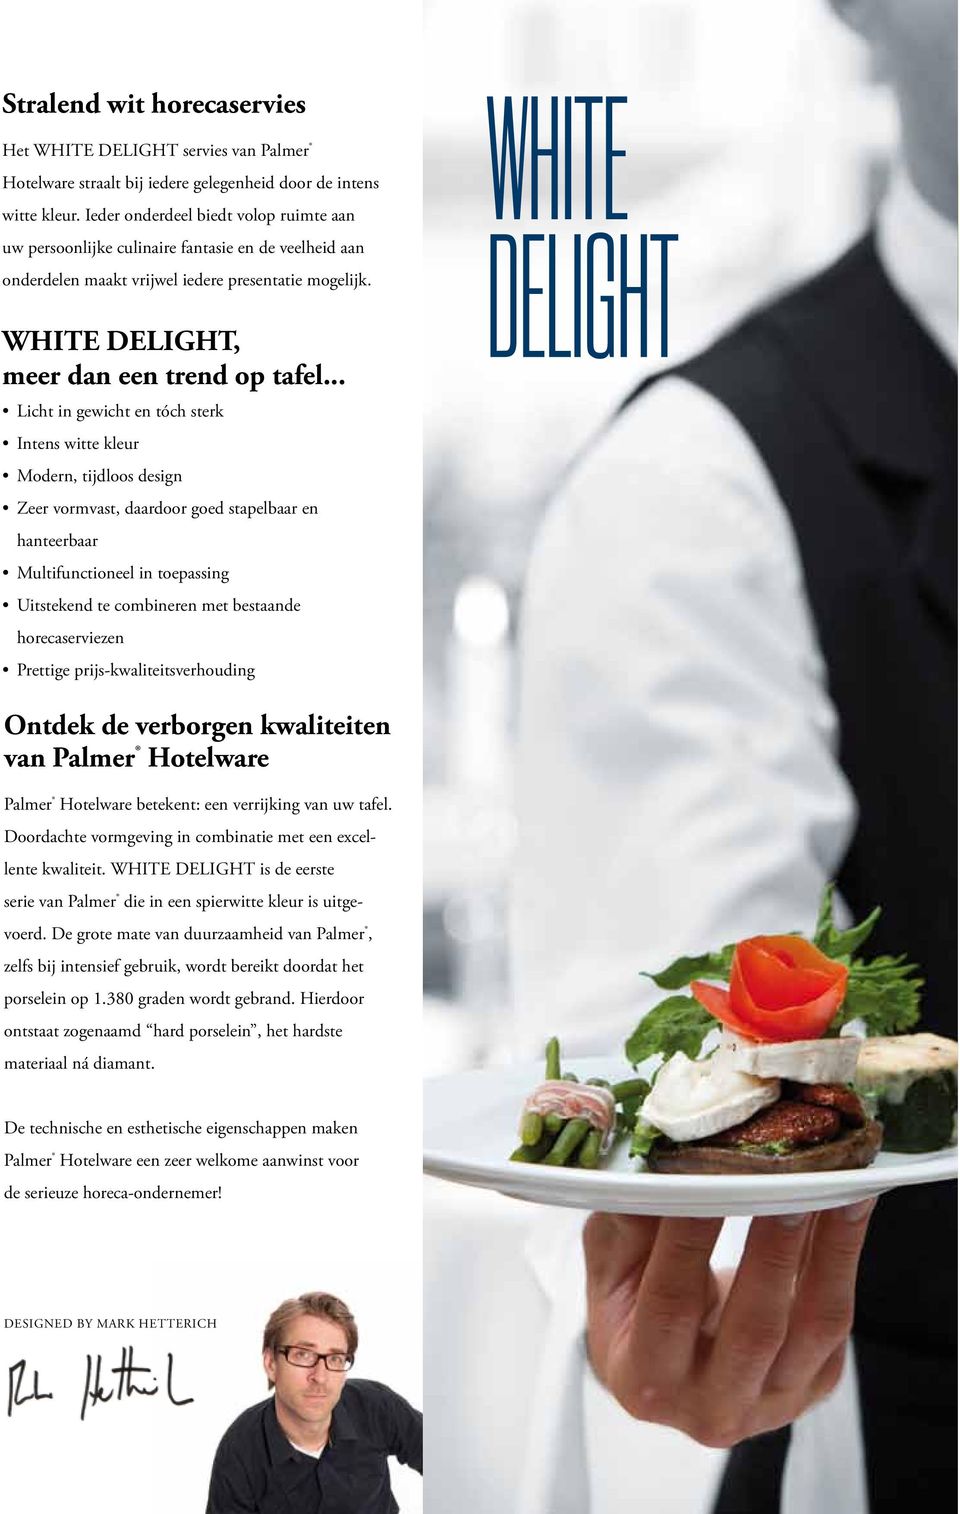 White delight WHITE DELIGHT, meer dan een trend op tafel.